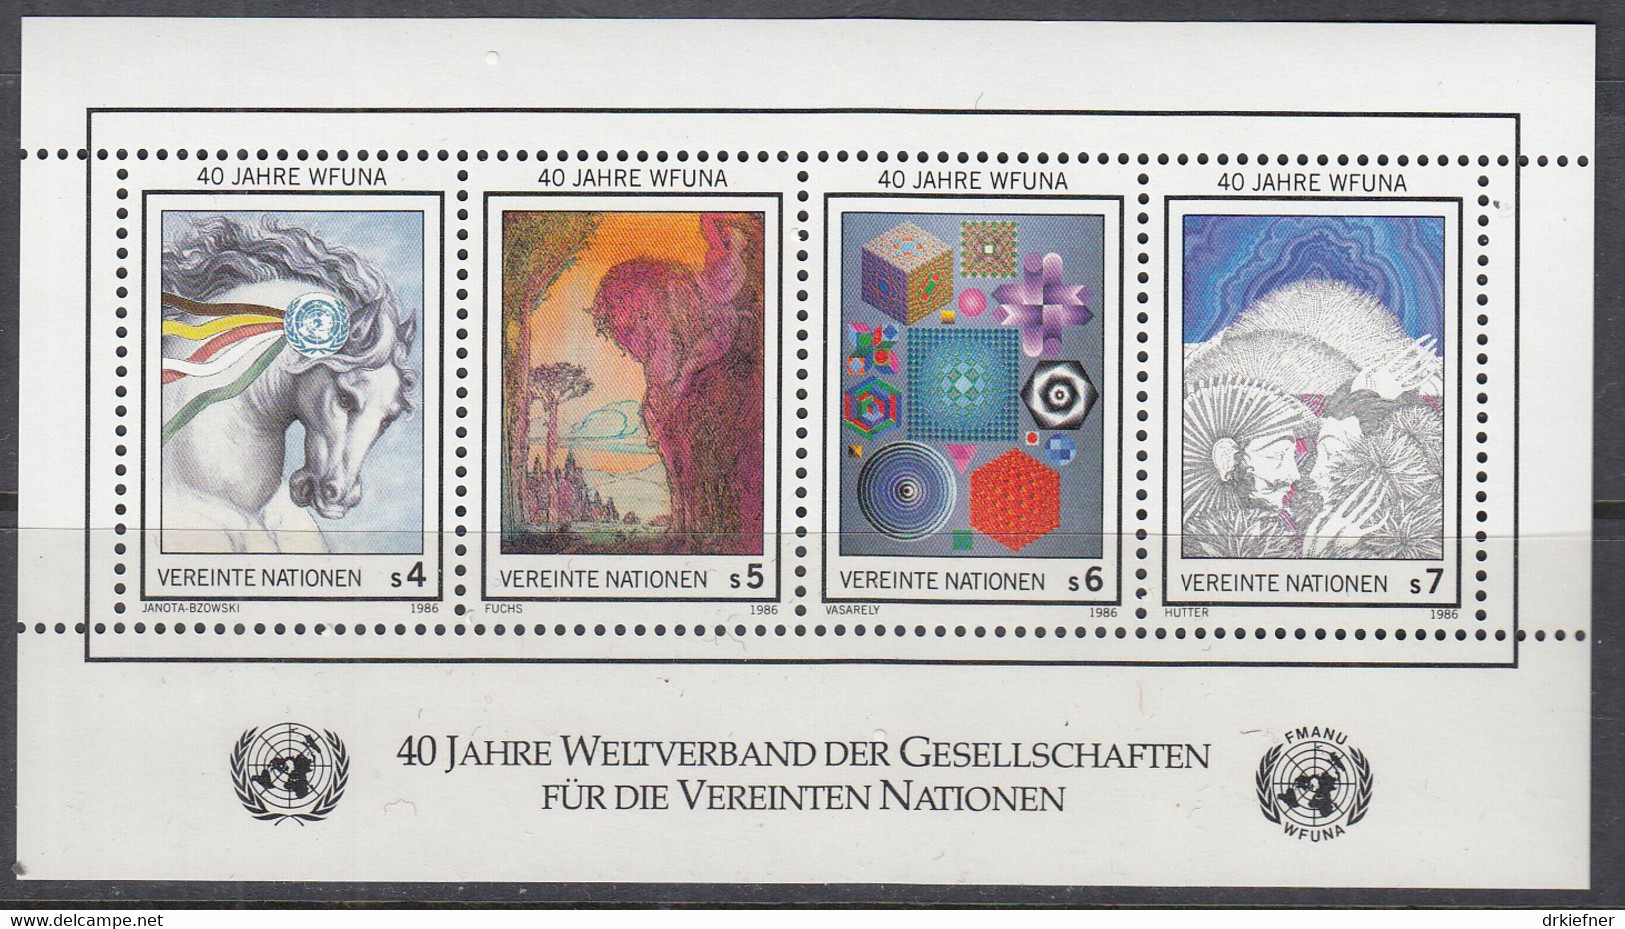 UNO WIEN  Block 3, Postfrisch **, 40 Jahre WFUNA, 1986 - Blocks & Kleinbögen